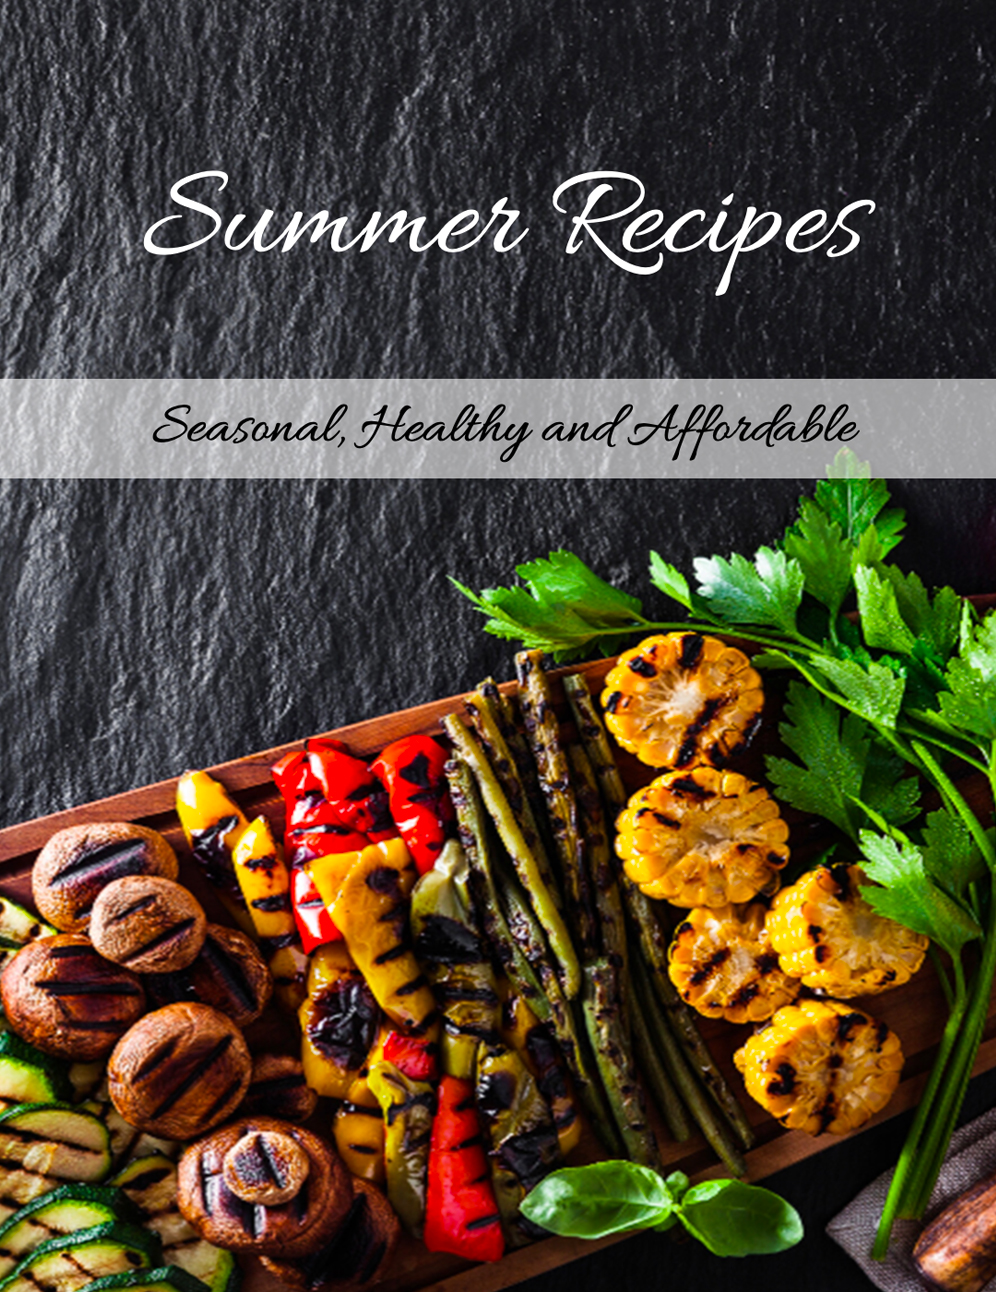 FREE Summer Recipes Cookbook